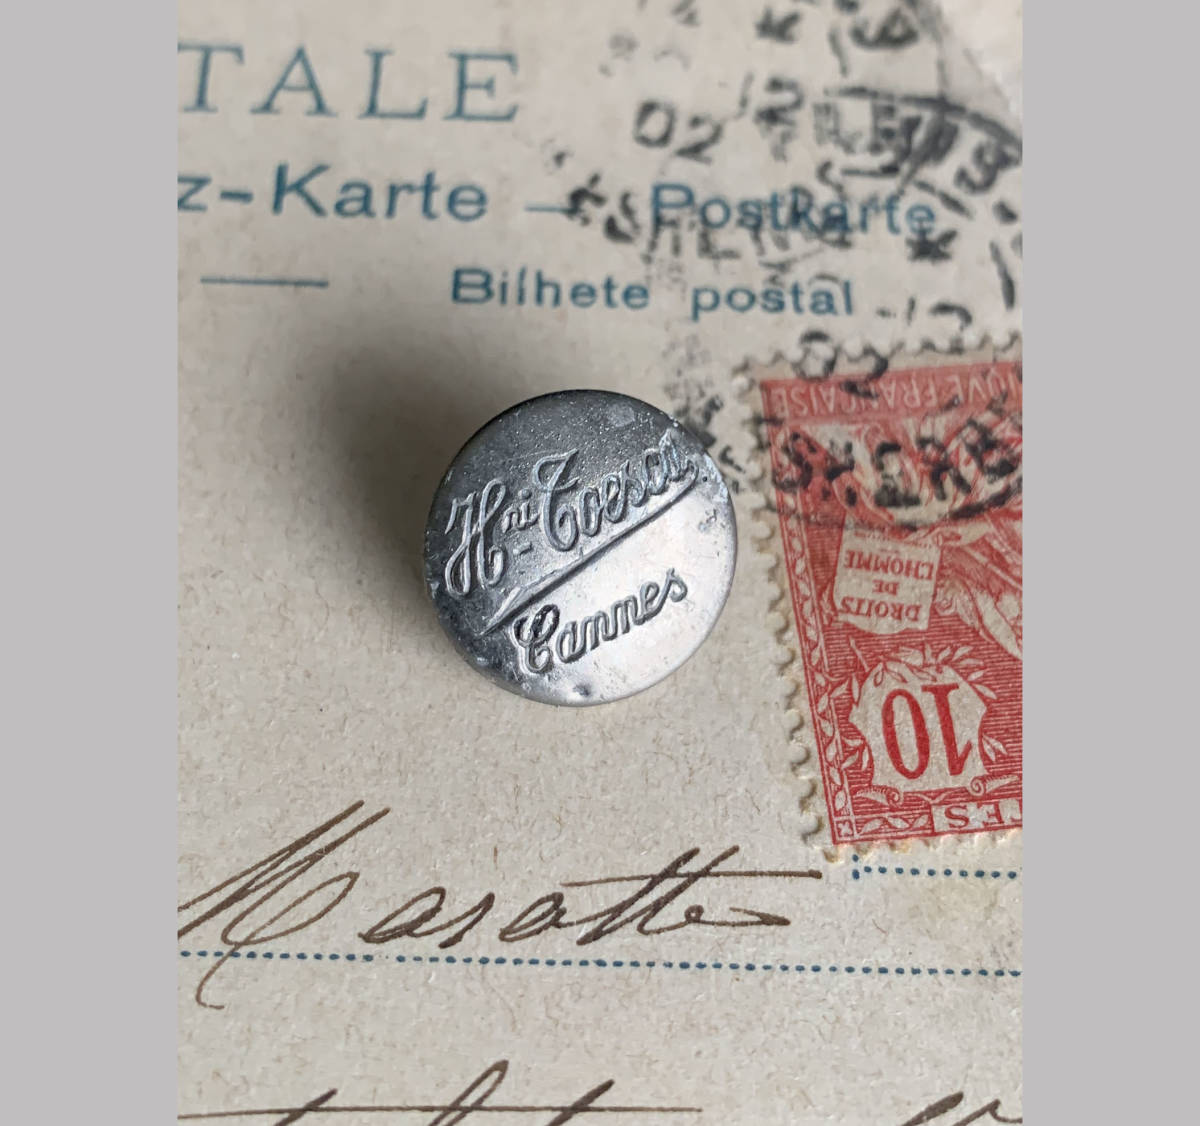 フランス パリ 1900-40s ホワイト メタル ボタン φ14mm 欧州 古着 ハンティング ジャケット 刺繍 裁縫 ヴィンテージ アンティーク 2_画像1